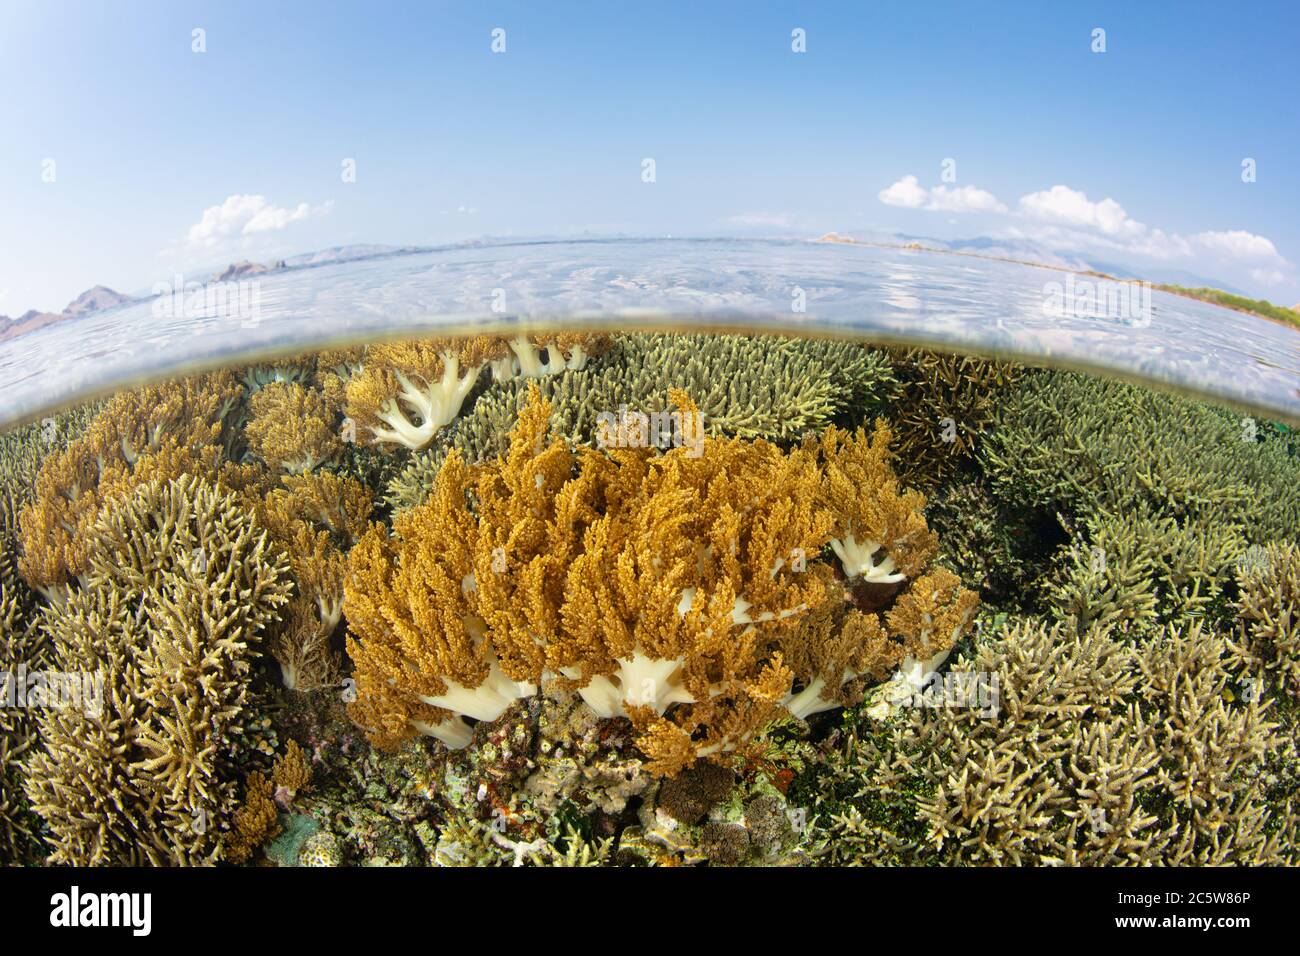 Les coraux mous et durs poussent juste sous la surface dans le parc national de Komodo, en Indonésie. Cette région tropicale est connue pour sa biodiversité marine étonnante. Banque D'Images